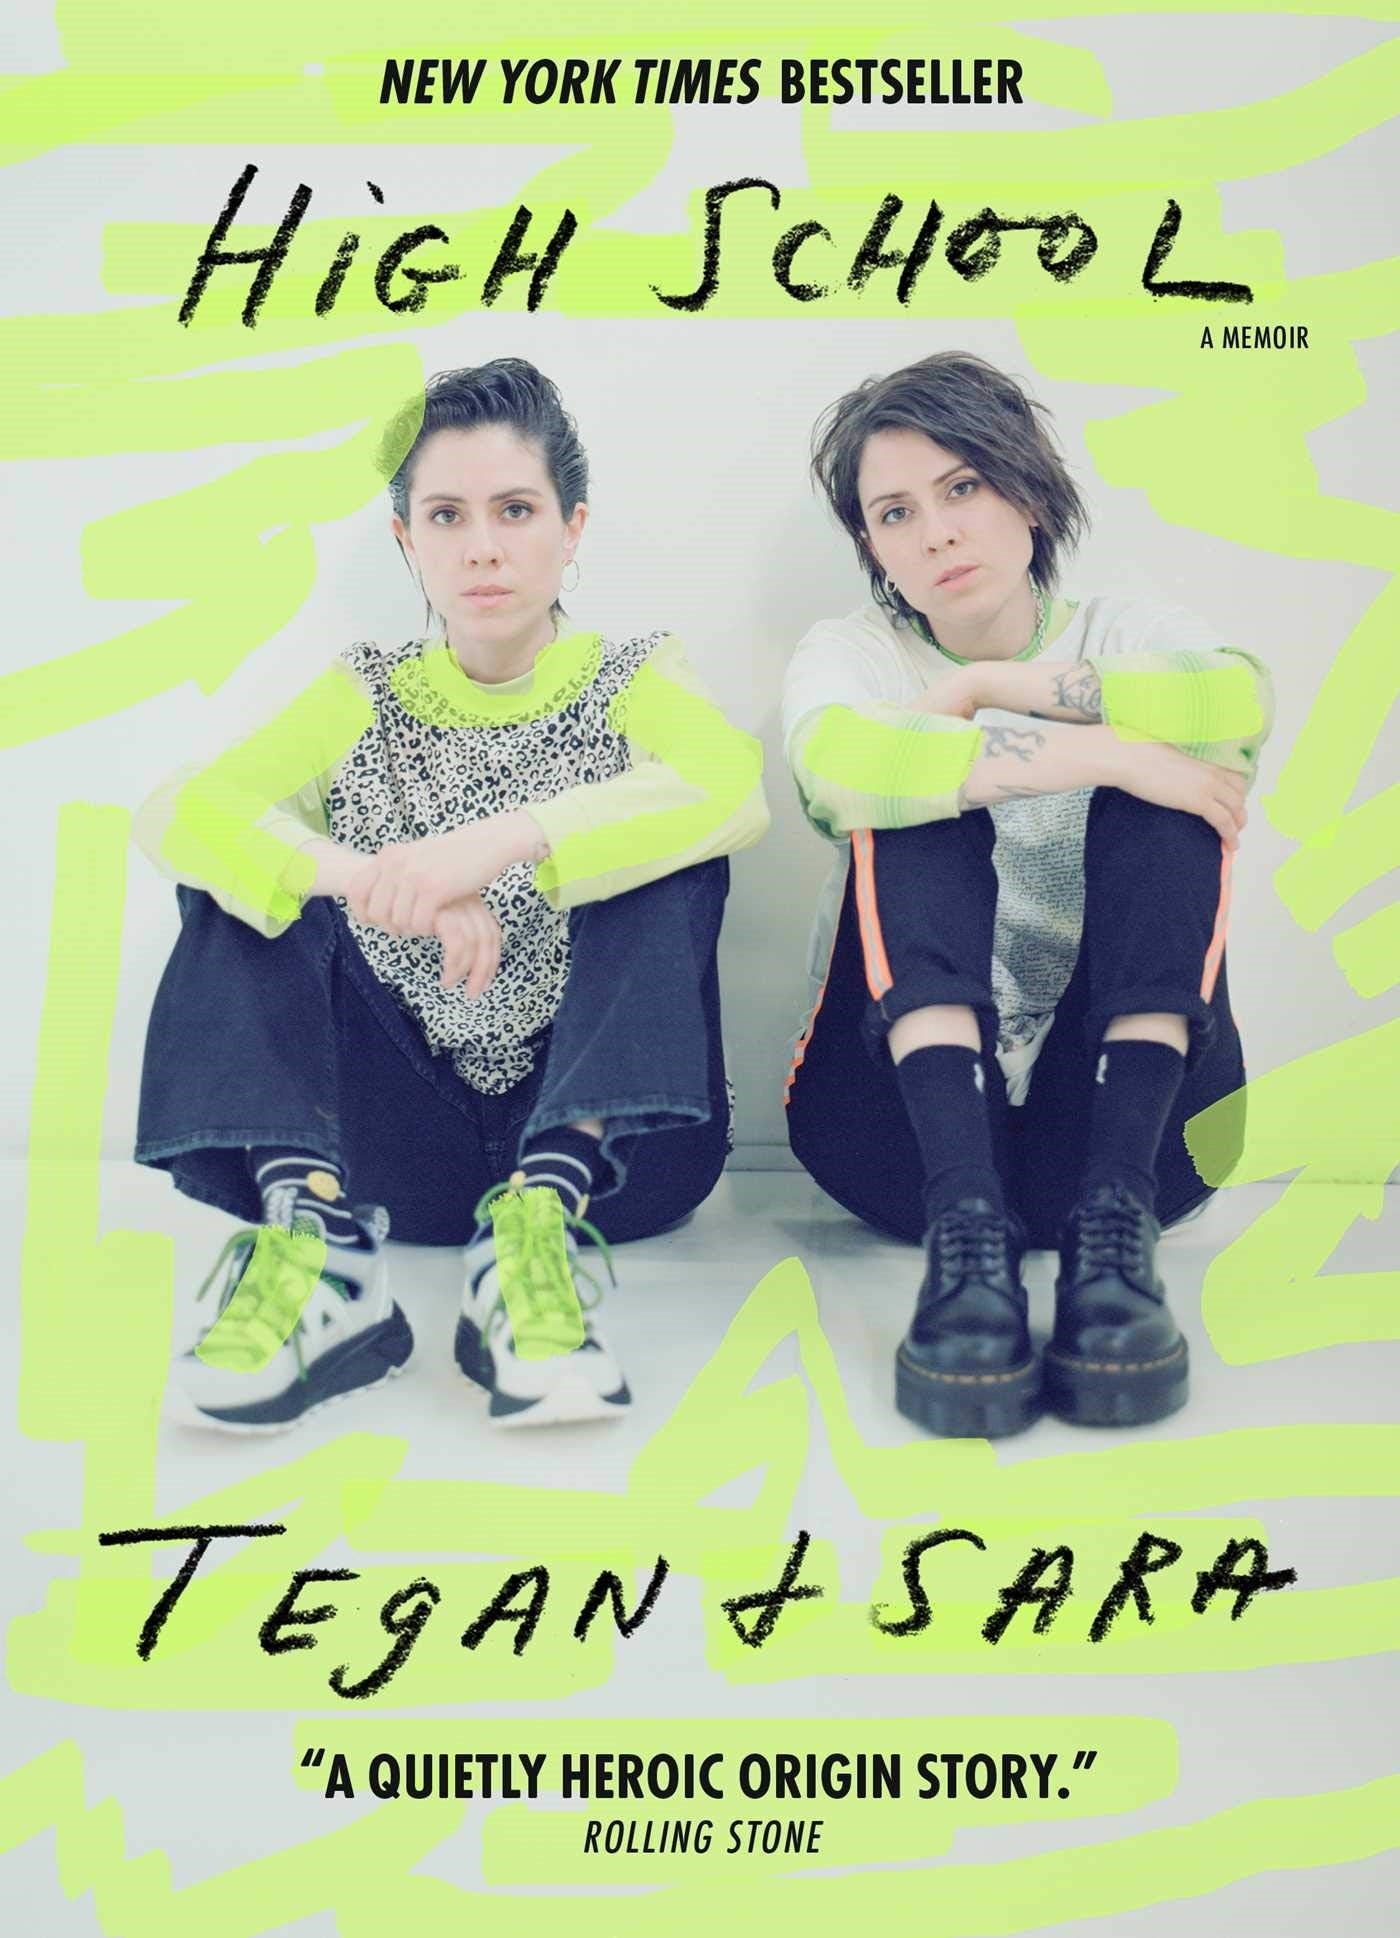 High School: A Memoir by Tegan Quin, Sara Quin